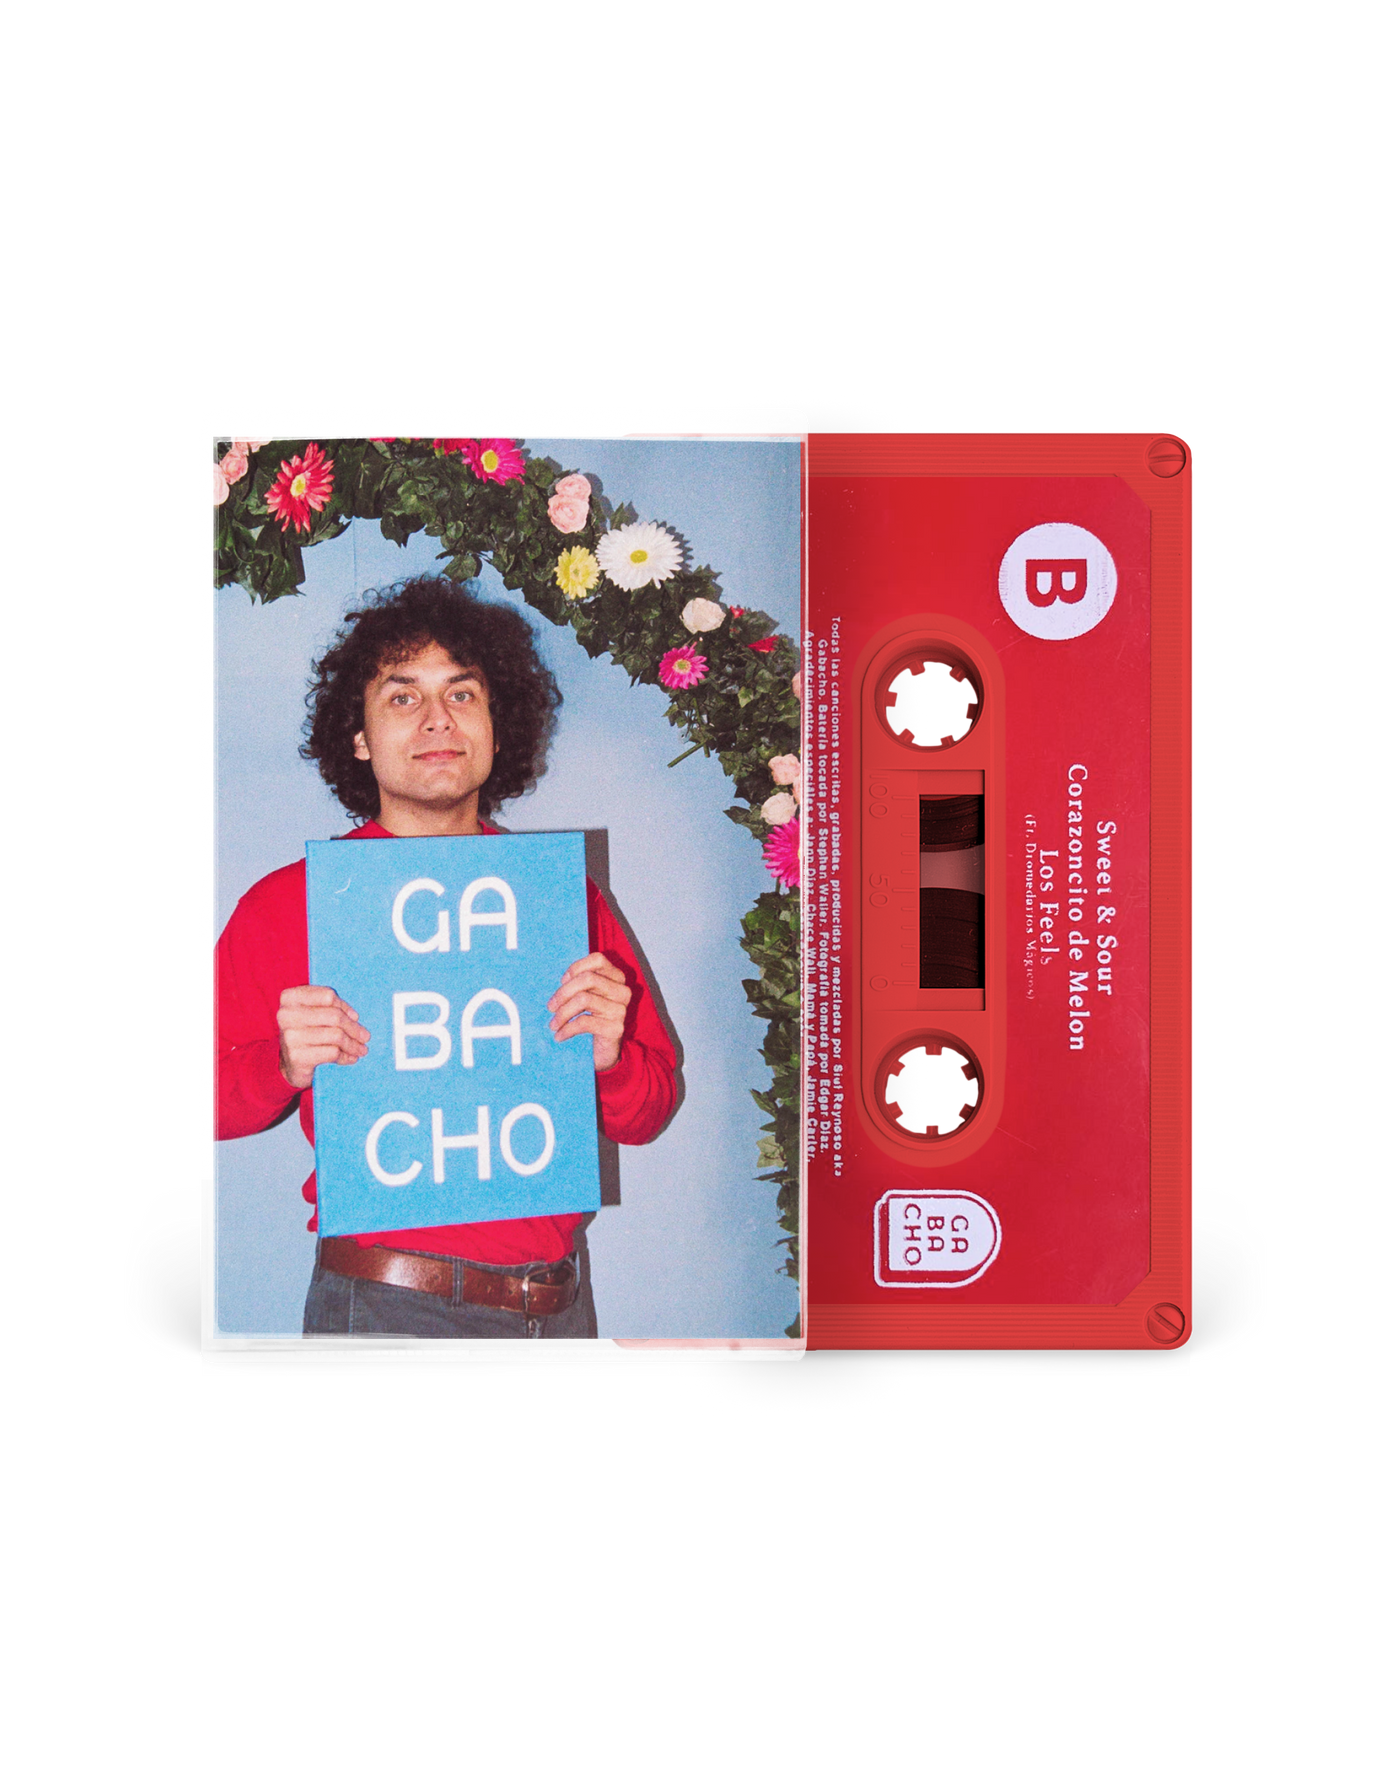 Cassette - Gabacho EP